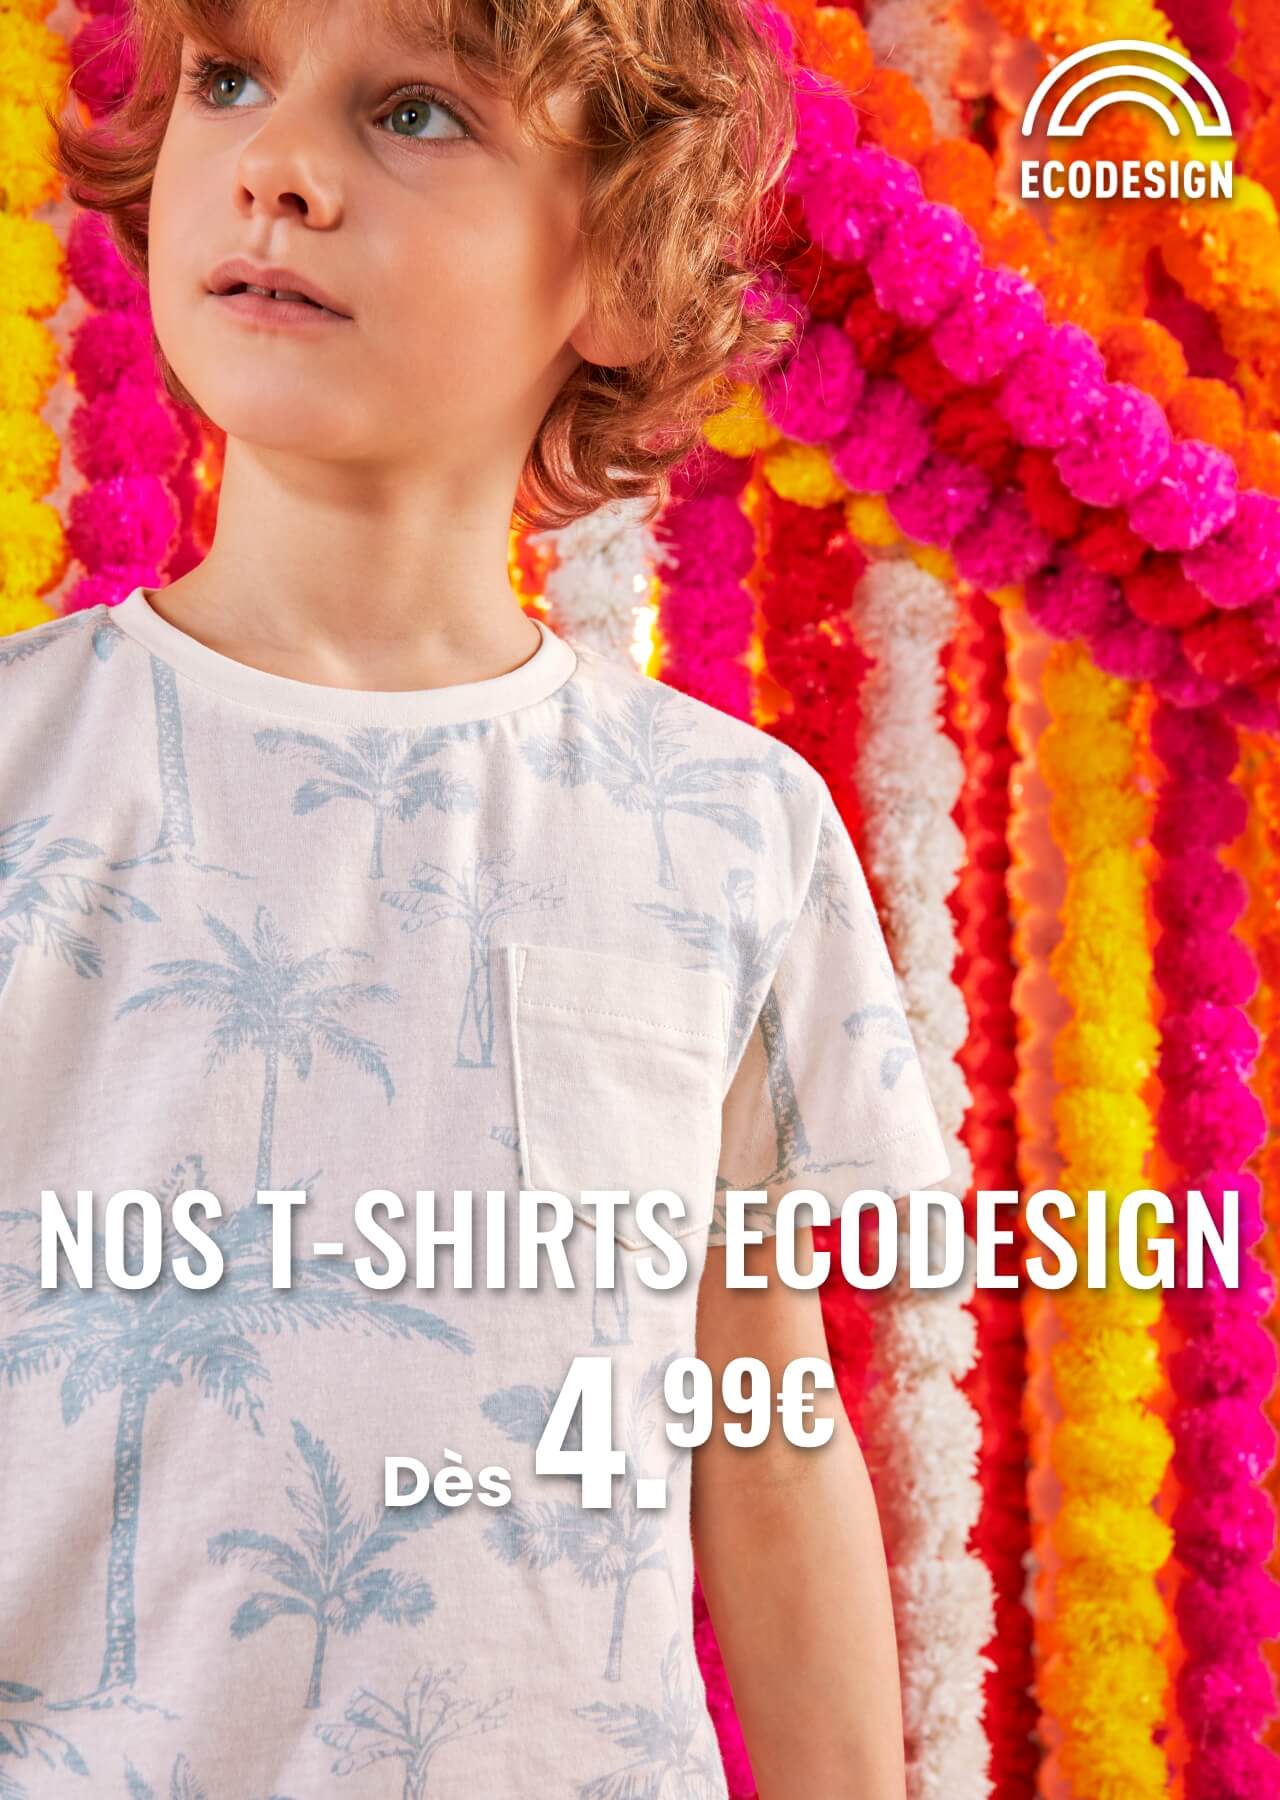 Nos T-shirts eco design dès 4,99€